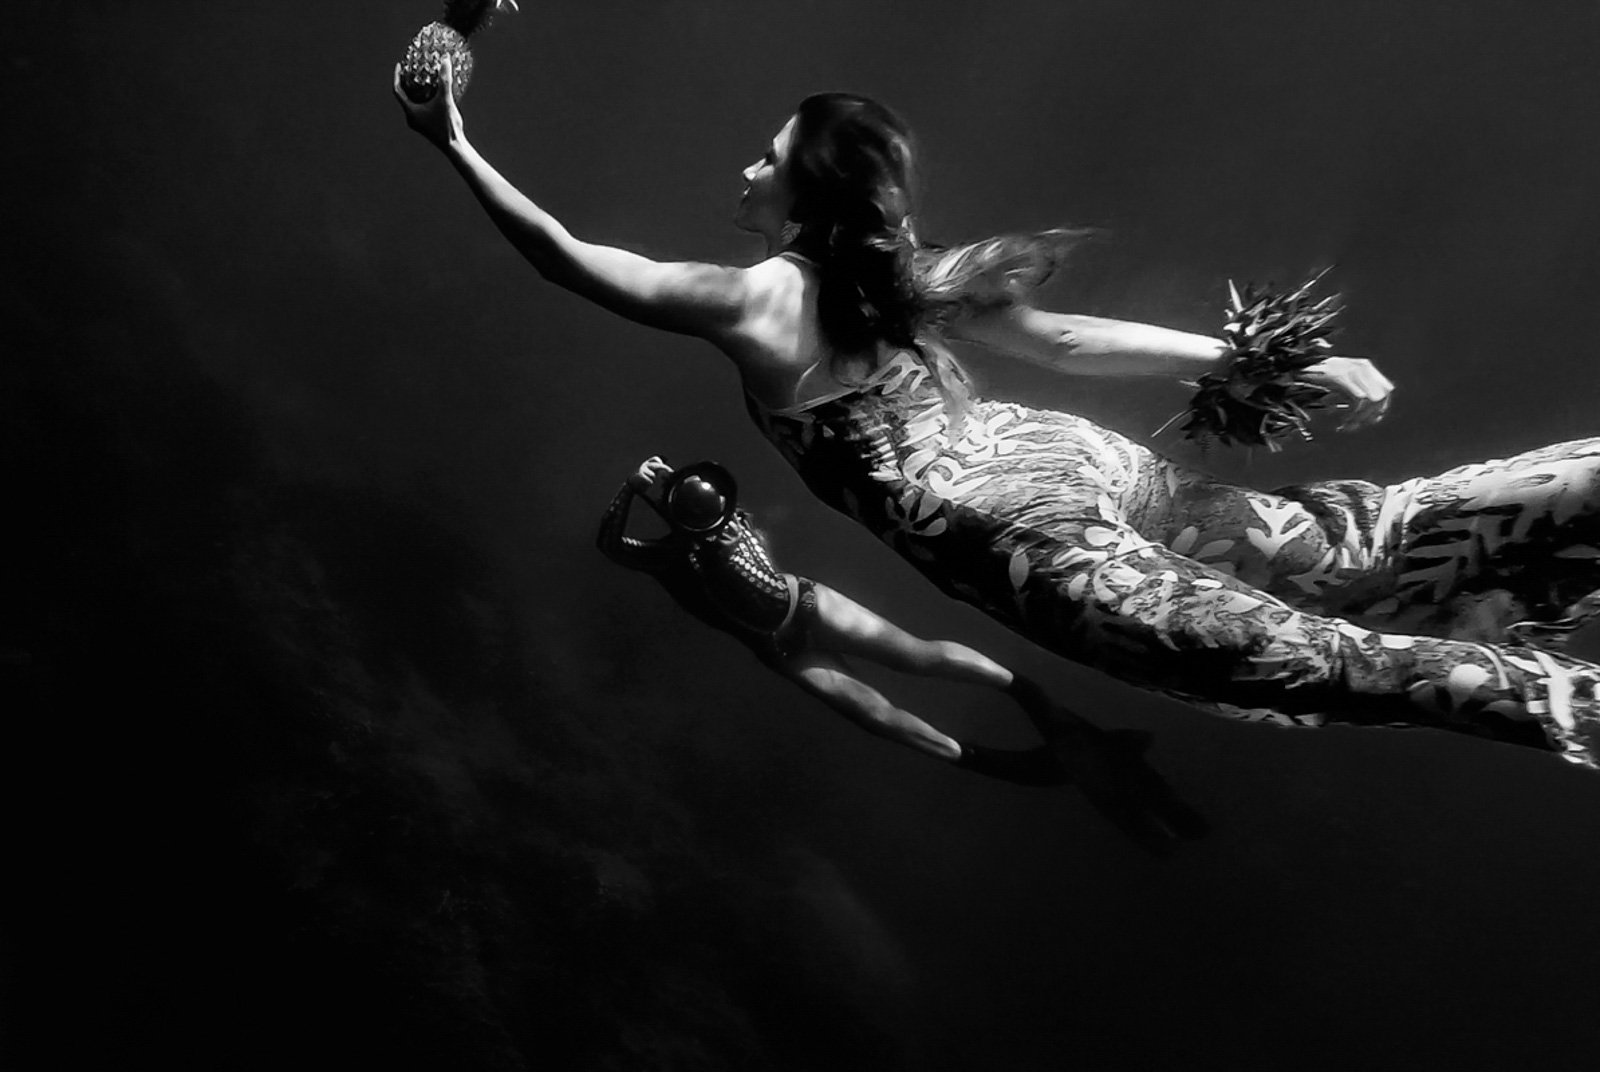 Photographe aquatique sous l'eau